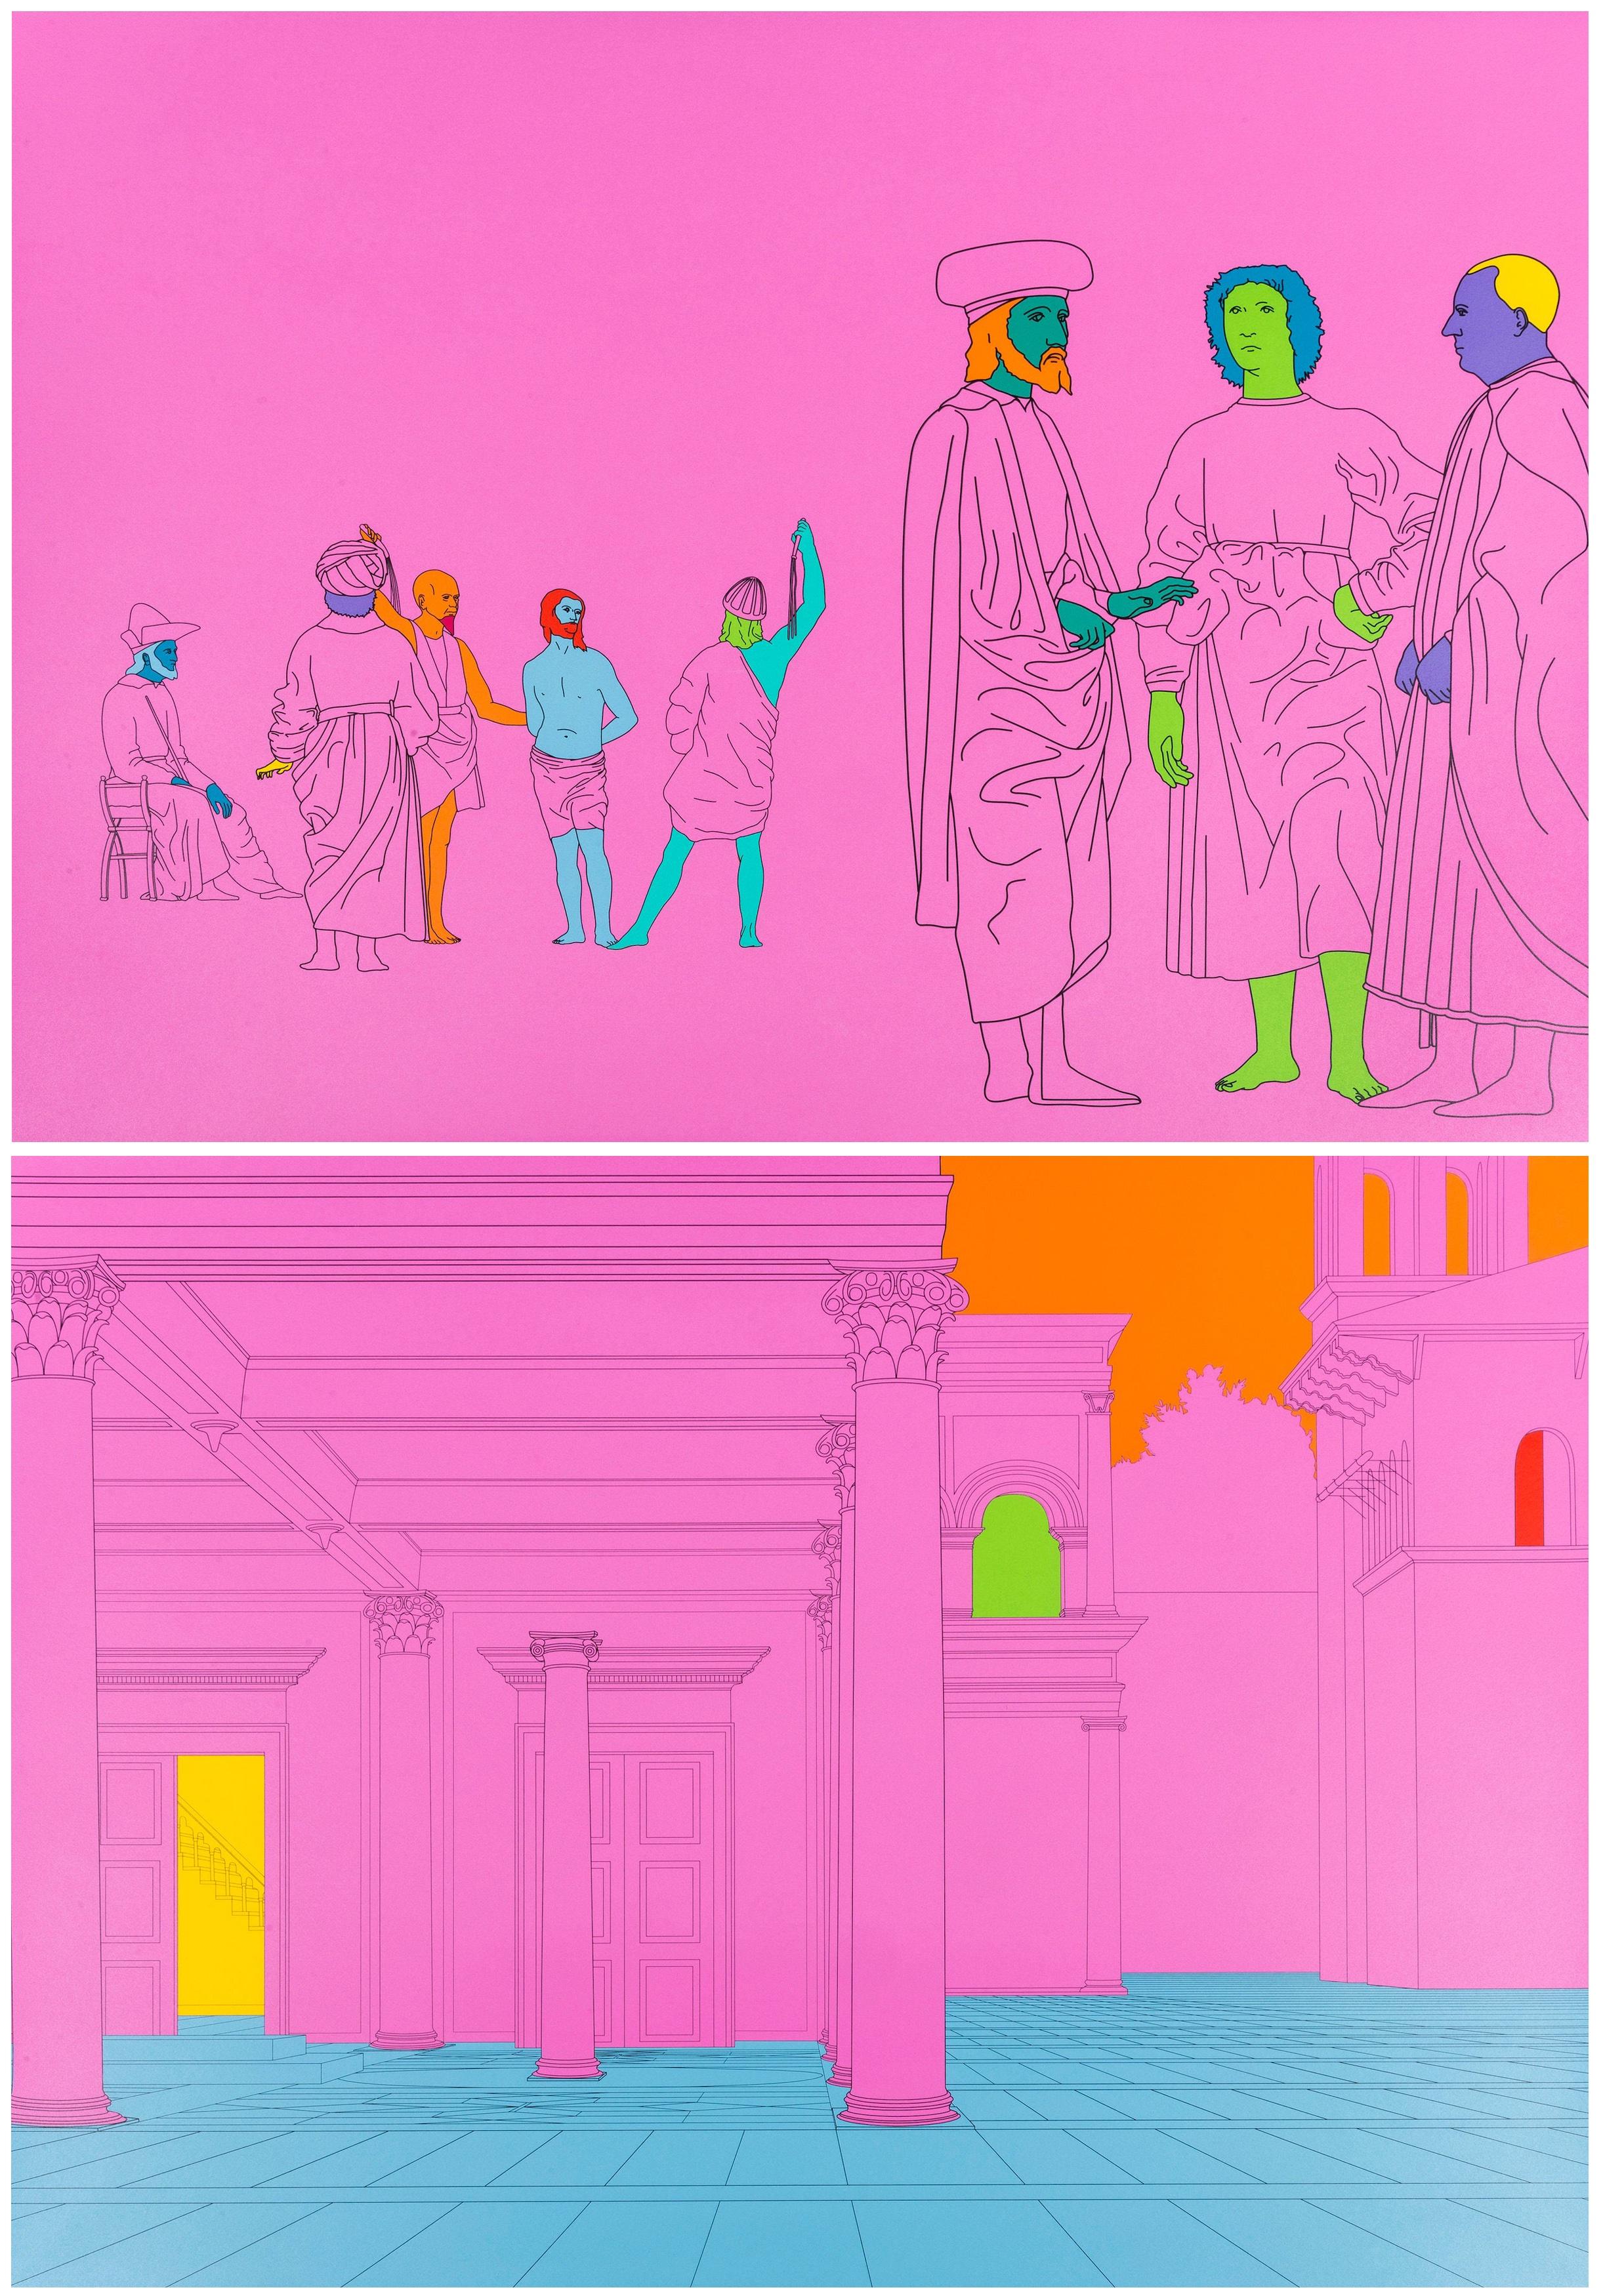 Dekonstruktion von piero (rosa), 2004
Michael Craig-Martin

Ein Paar Siebdrucke in Farben, auf Wolle
Verso signiert, datiert und nummeriert aus einer Auflage von 40 Stück
Herausgegeben von Alan Cristea Gallery, London
Jedes Blatt: 63 × 88,5 cm (24,8